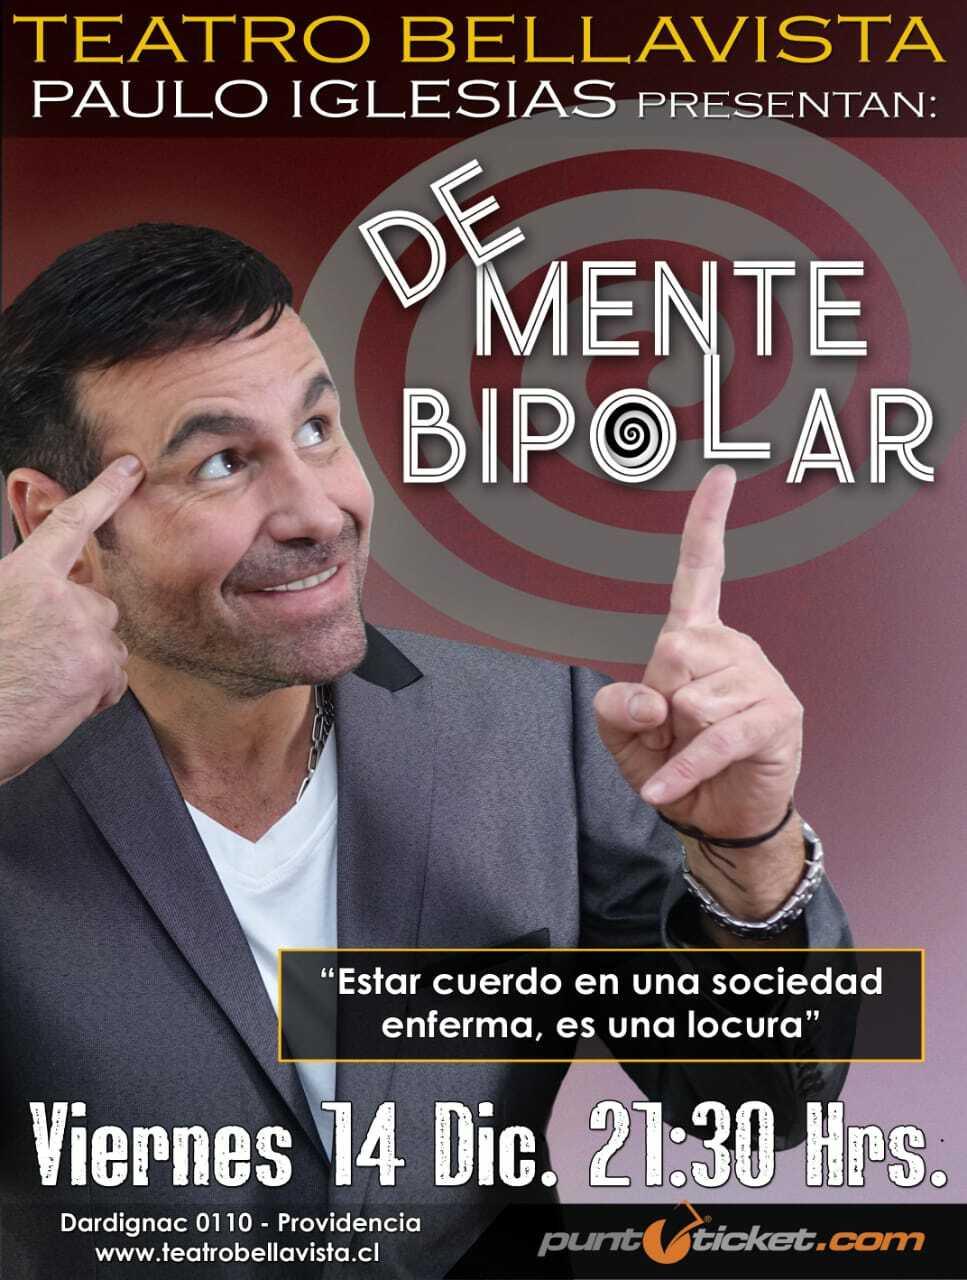 Paulo Iglesias de Mente Bipolar